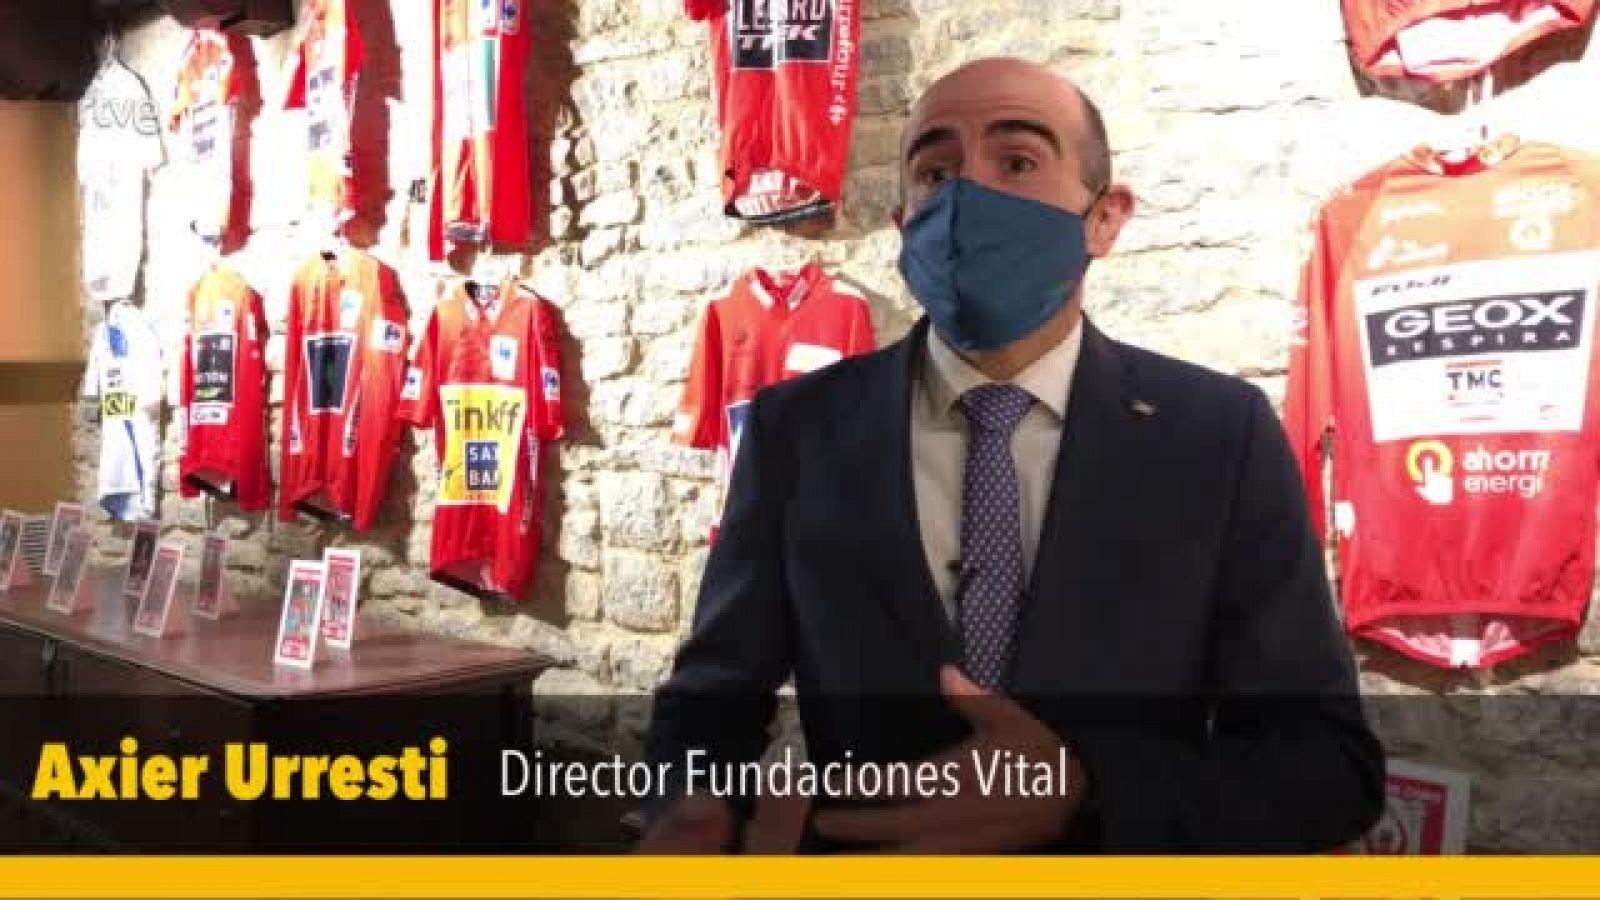 Etapa 7 de la Vuelta 2020 | Axier Urresti: "El equipo KAS es parte del patrimonio cultural y deportivo vasco"